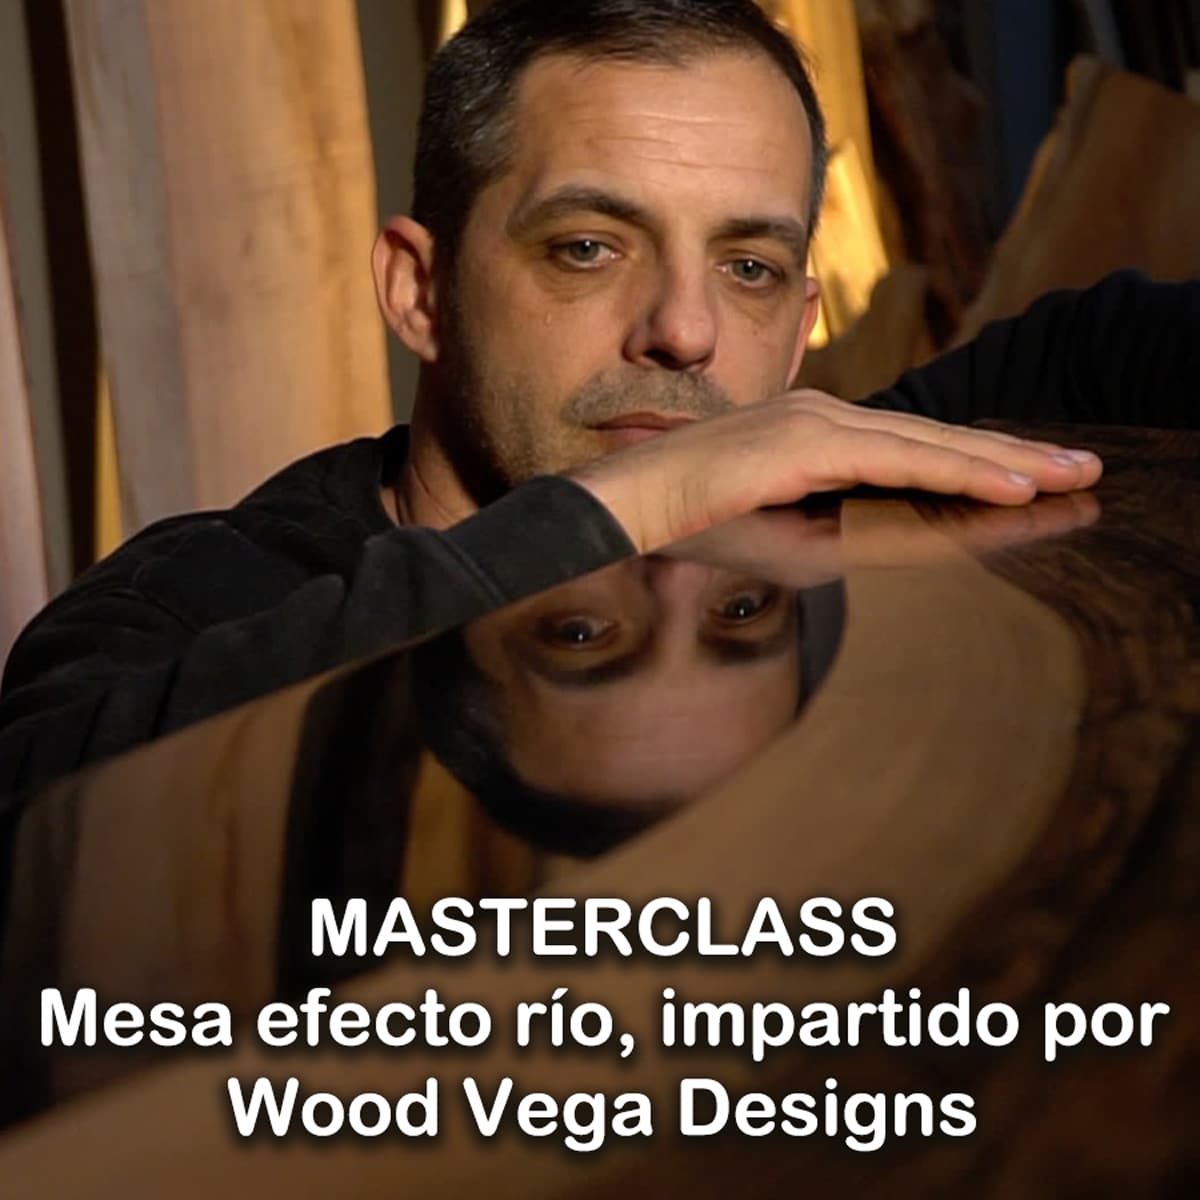 Masterclass mesa efecto río impartido por Wood Vega Designs en vídeo